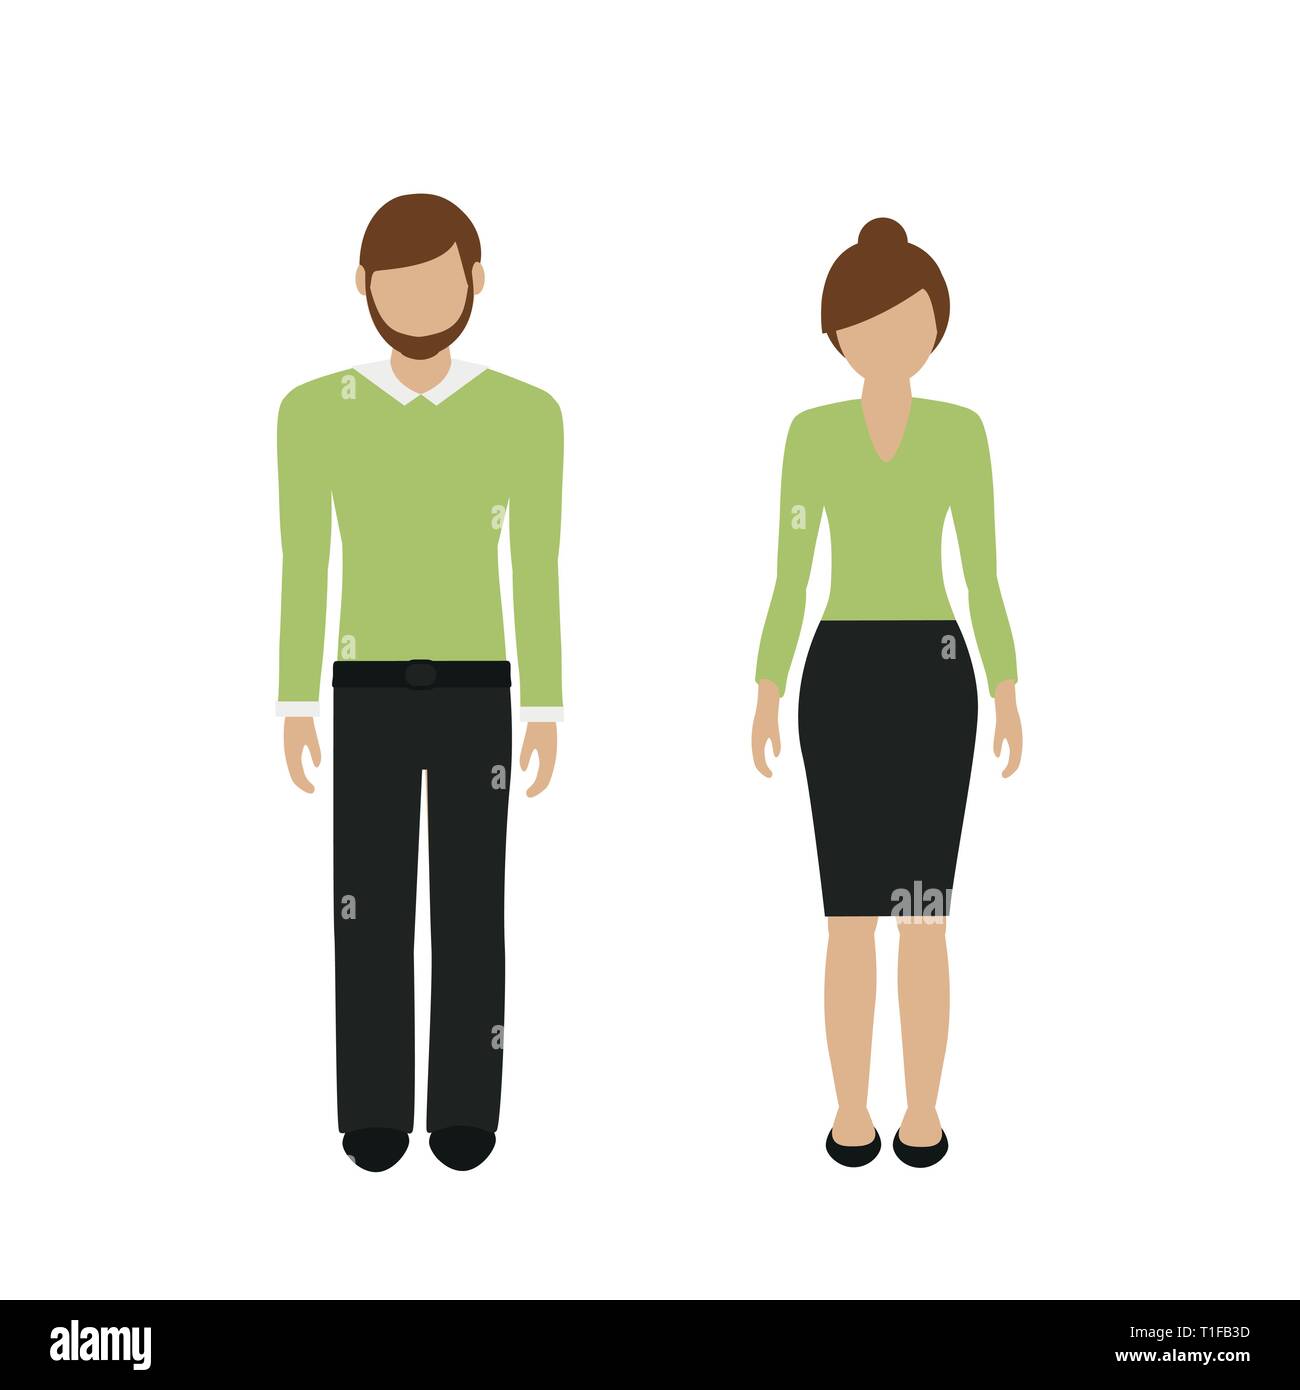 L'homme et la femme avec les cheveux bruns caractère isolé sur fond blanc européen illustration vecteur EPS10 Illustration de Vecteur